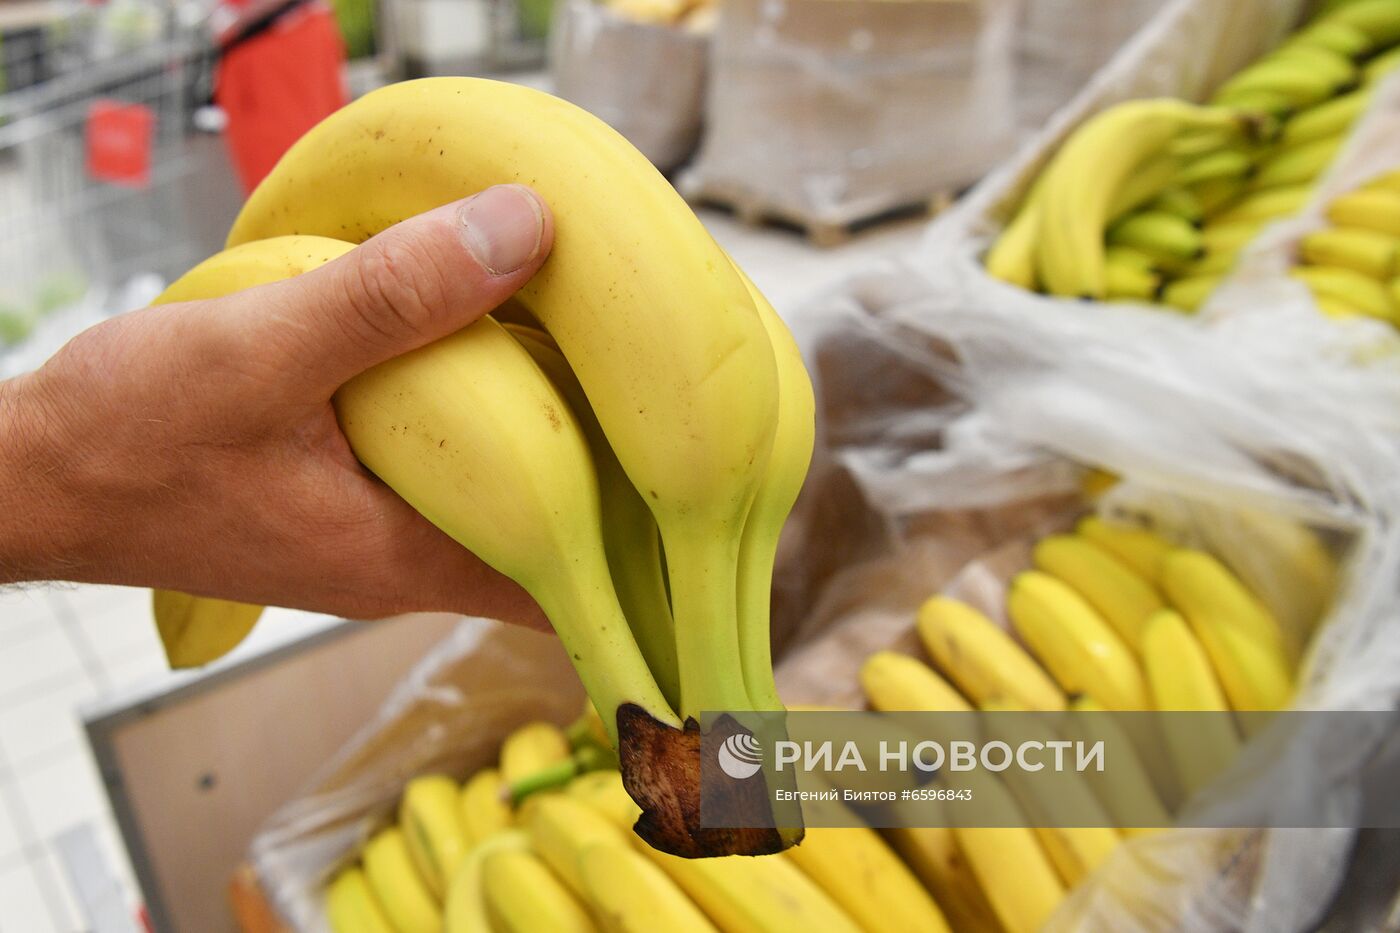 Продажа бананов в Москве